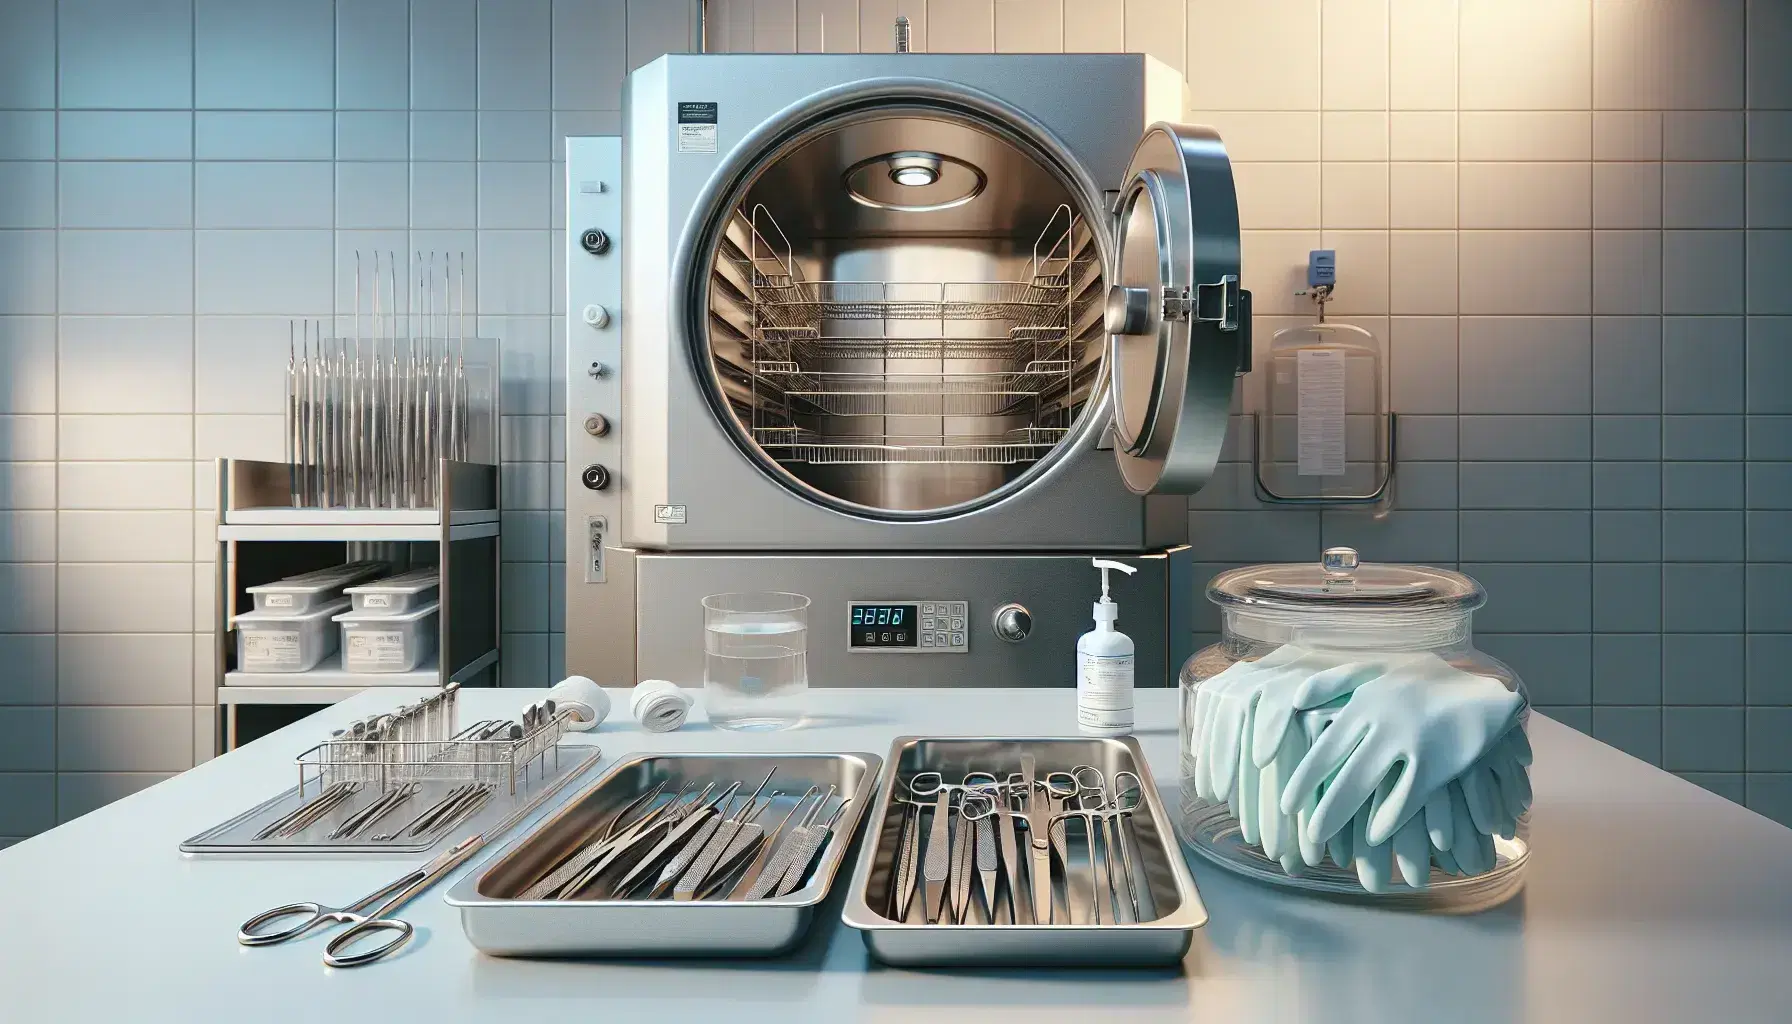 Primer plano de un laboratorio de microbiología con autoclave abierto, bandejas metálicas con instrumentos quirúrgicos y frasco de desinfectante.